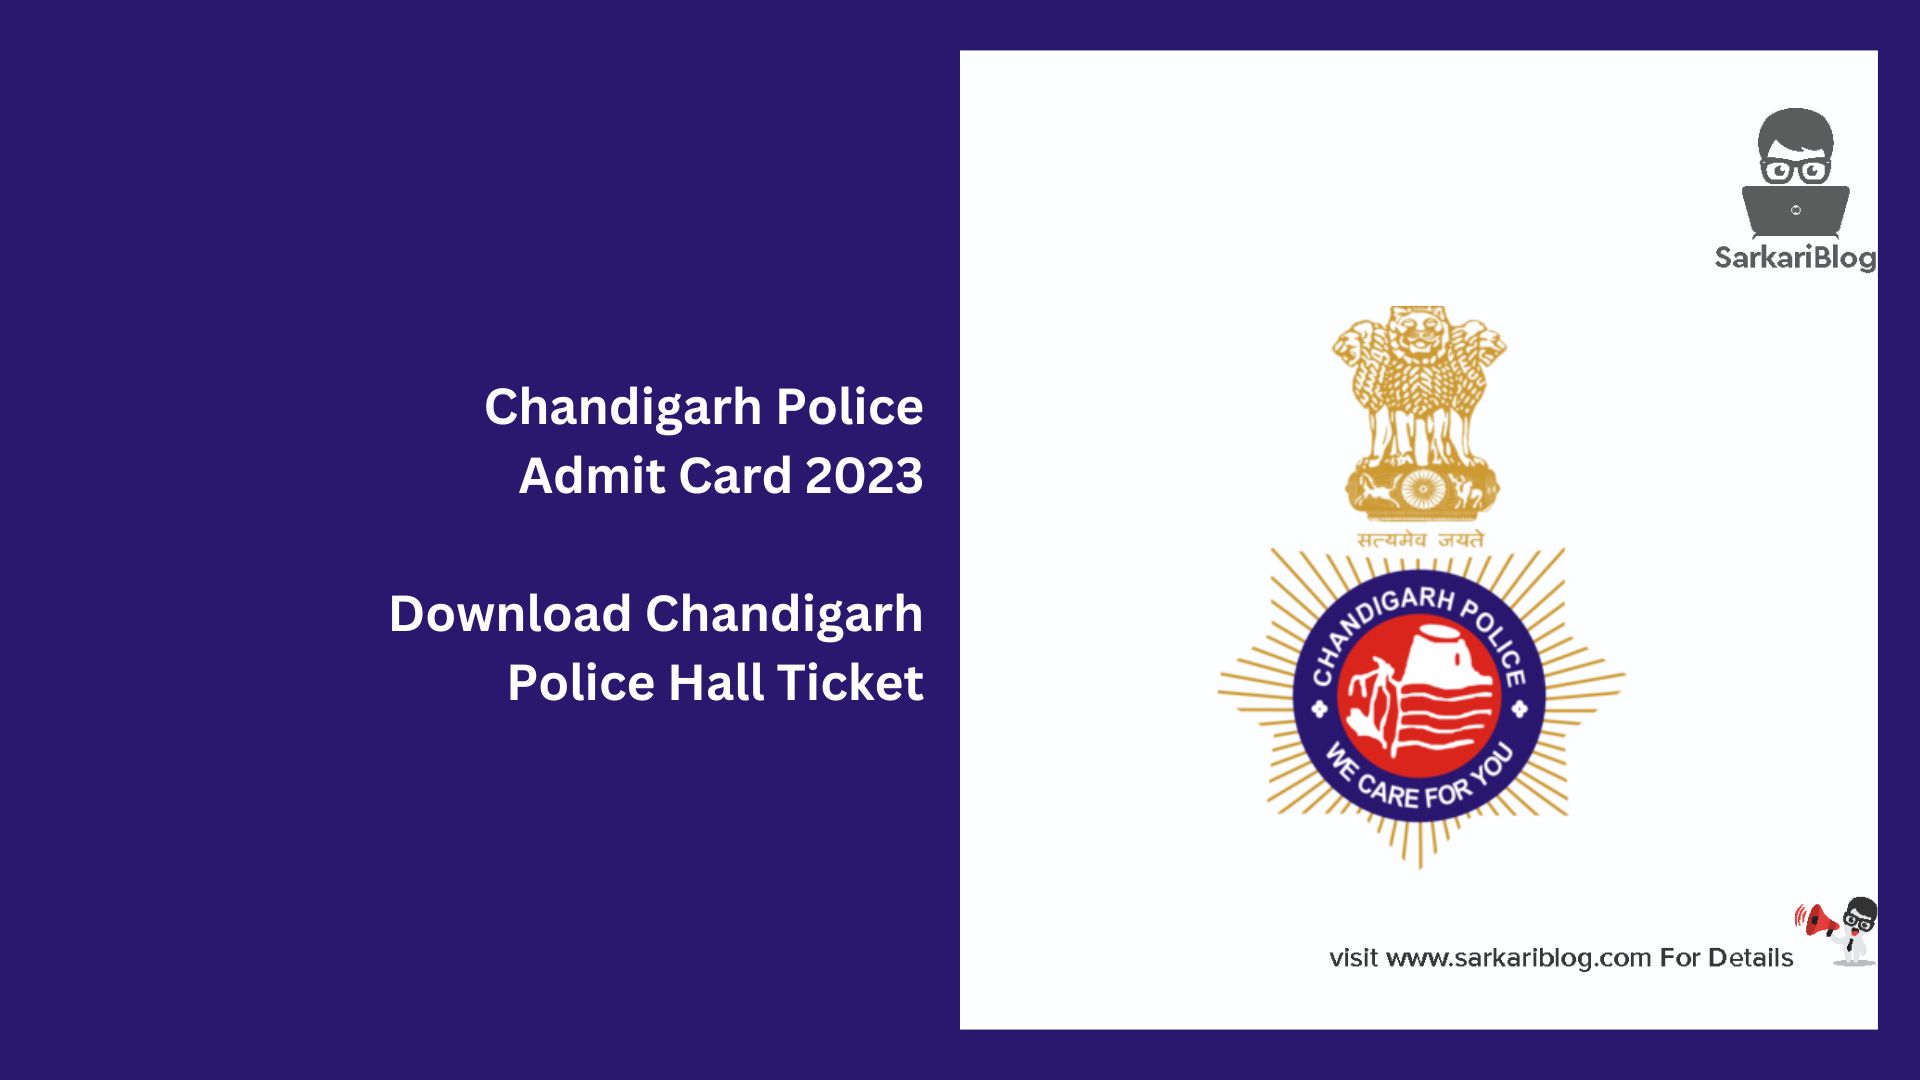 Chandigarh Police Admit Card 2023